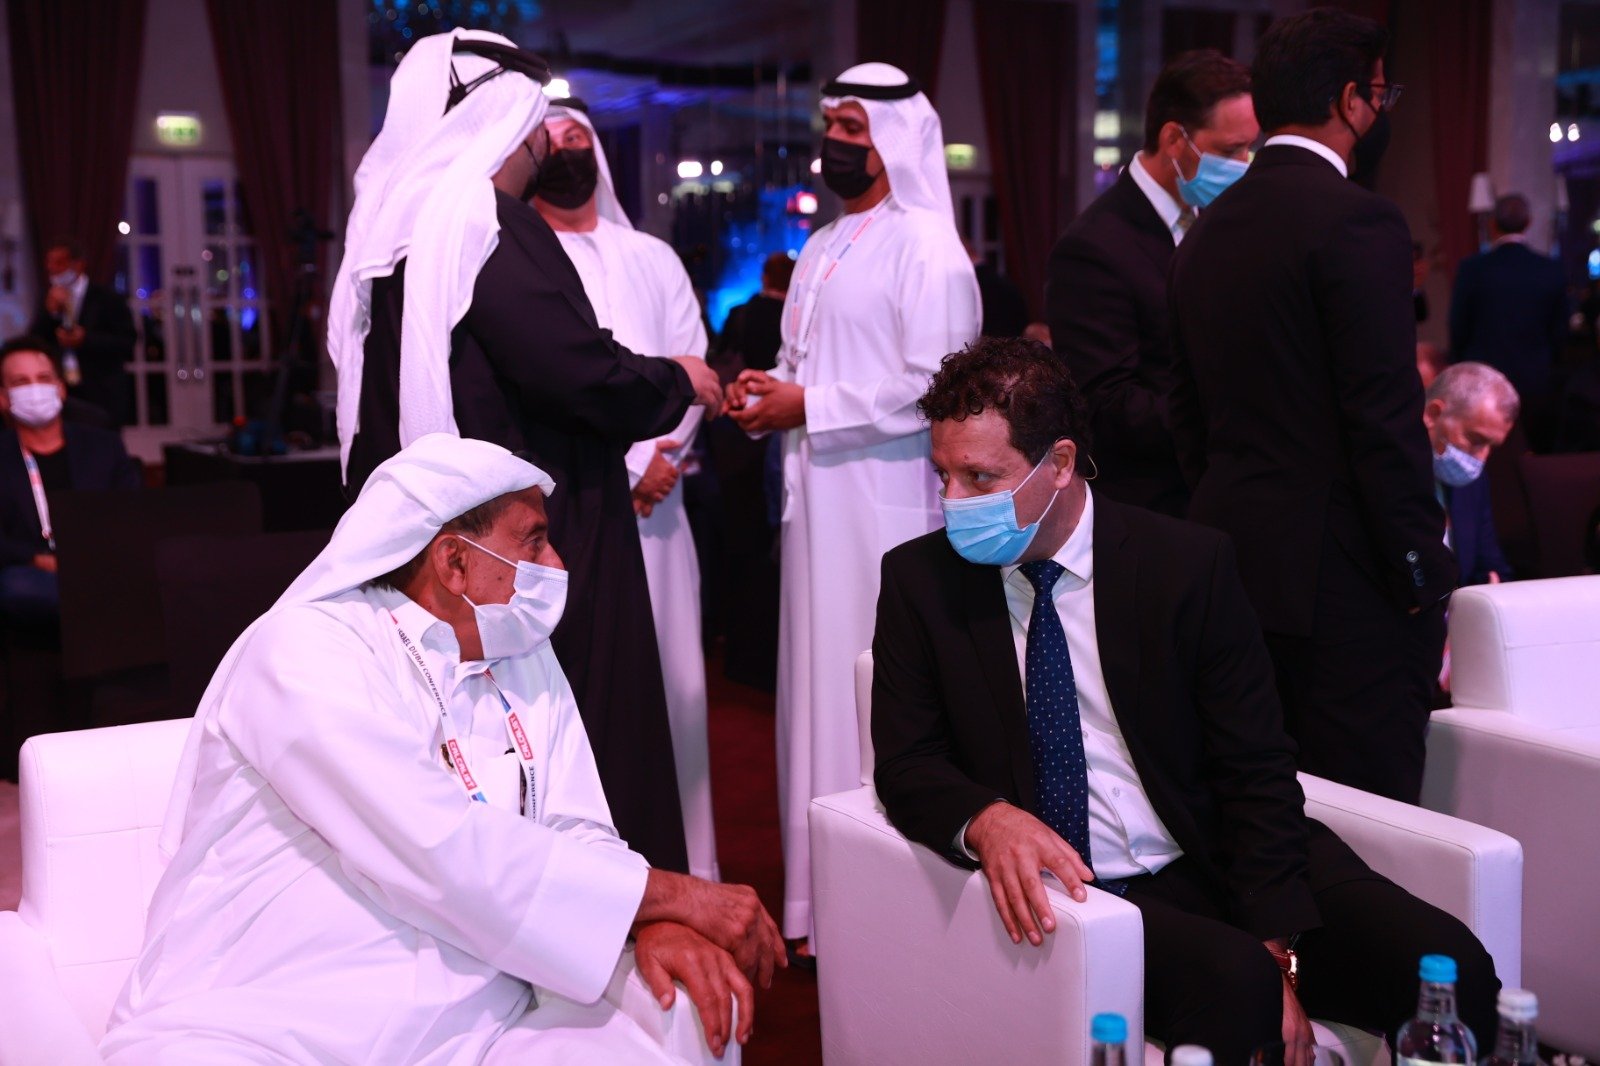 د. سامر حاج يحيى رئيس بنك لئومي يفتتح المؤتمر الأول "إسرائيل – دبي": "أينَما حلَّ السلامُ حلَ الاستقرارُ والازدهارُ الاقتصاديُ"-1